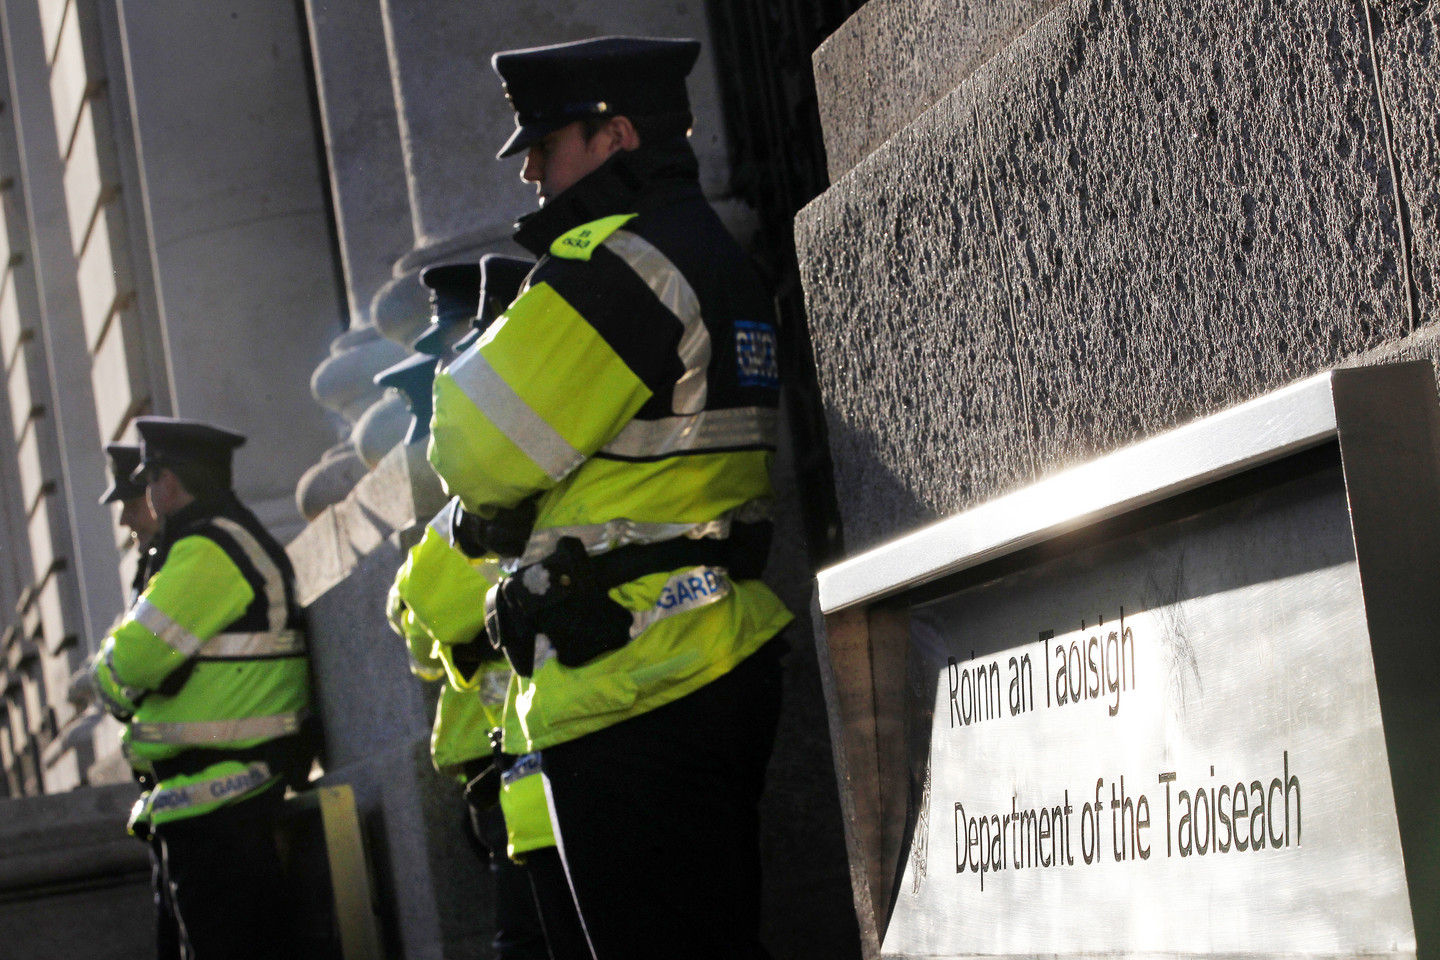 Airijos pareigūnai aptiko didžiulius lietuvio turtus, nors jis oficialiai gyvena iš pašalpos. <br> Reuters/Scanpix nuotr. 